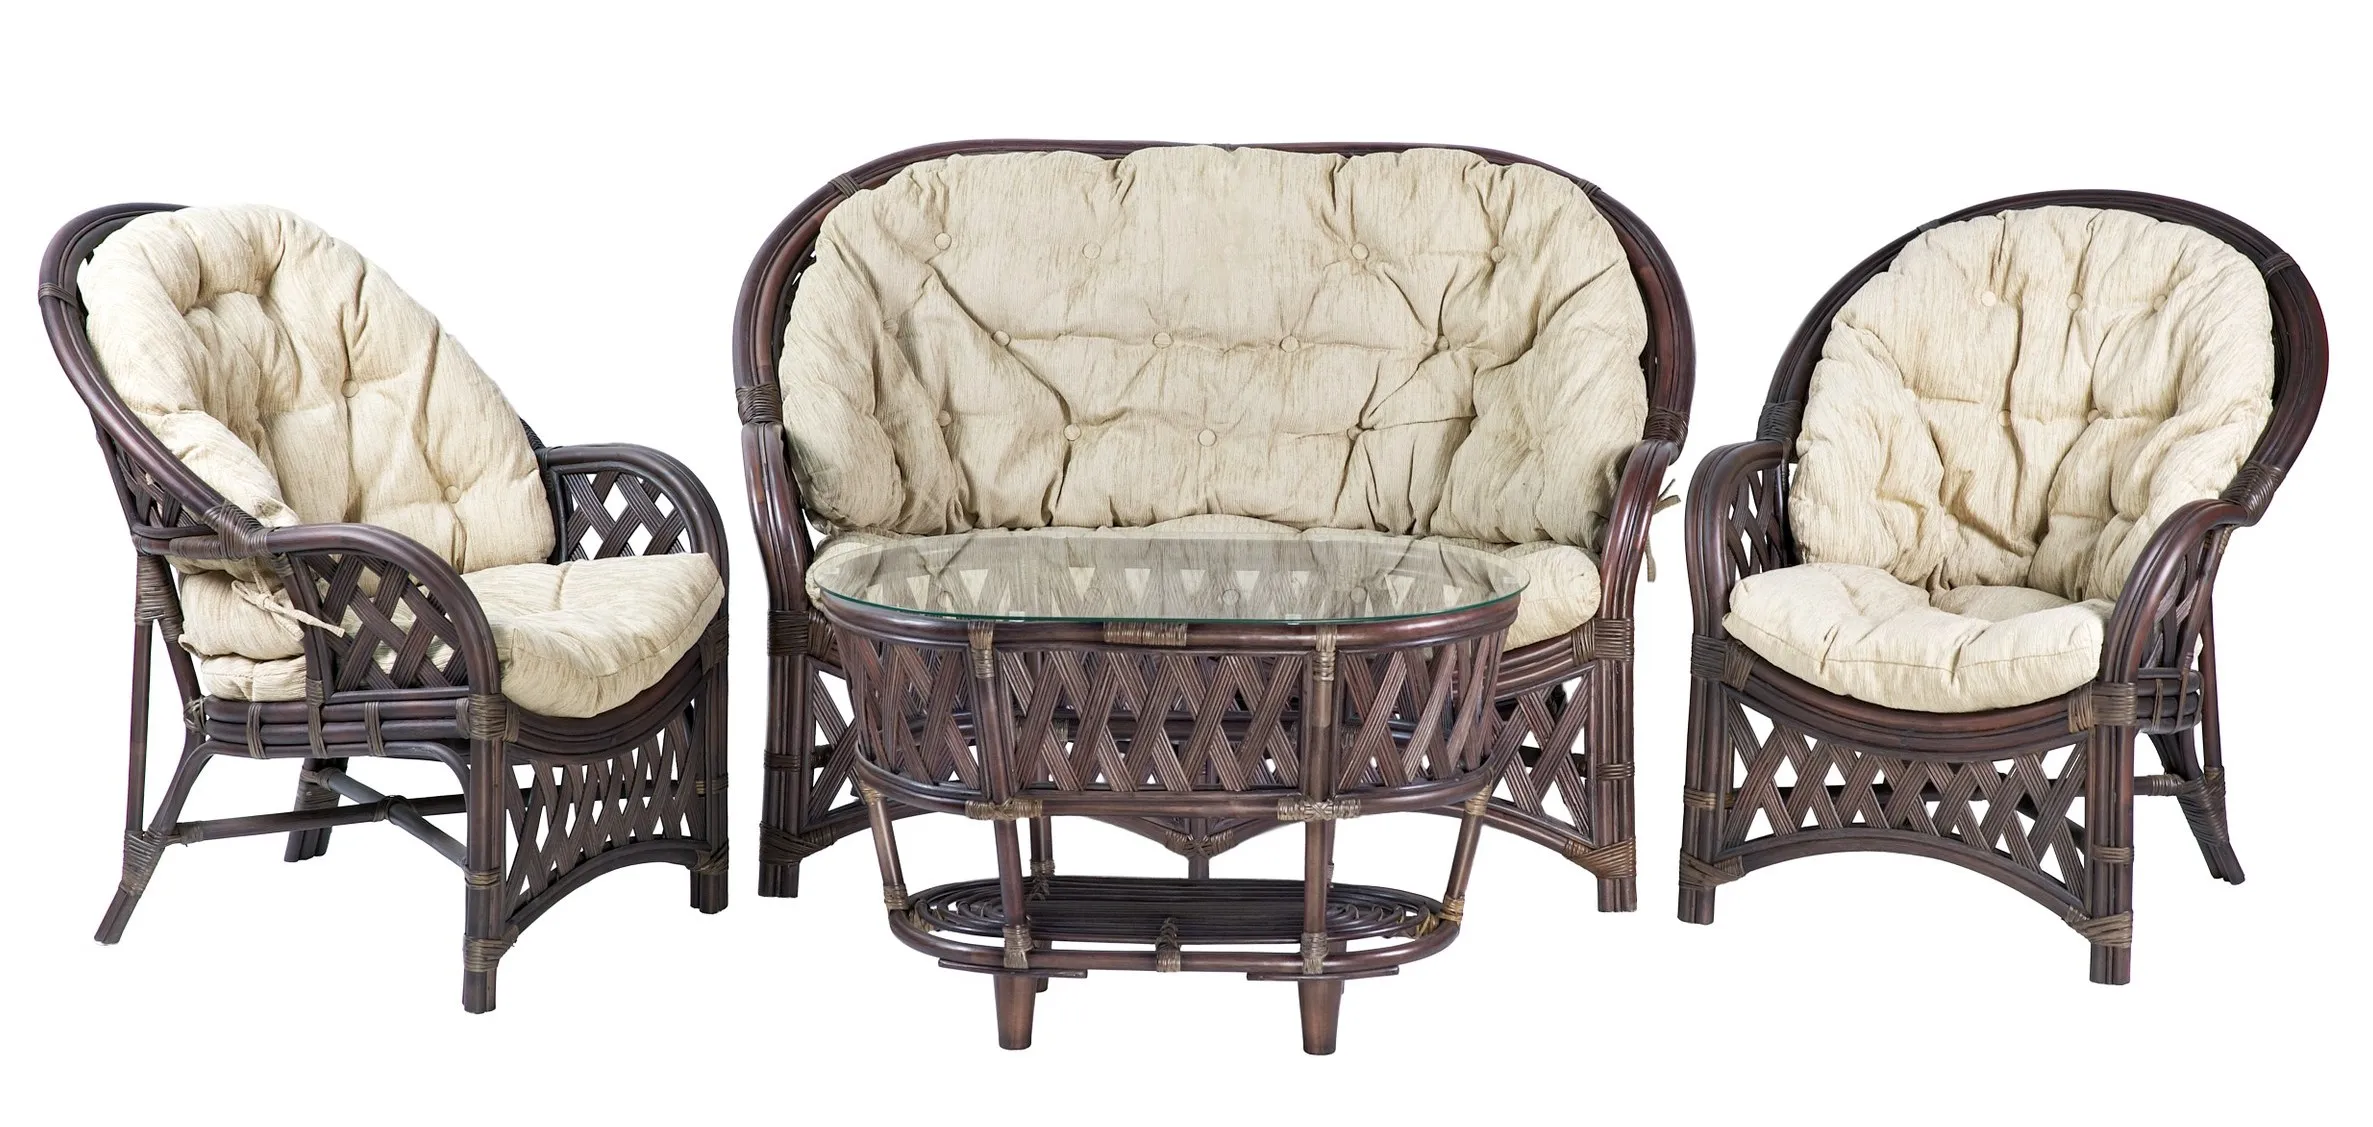 Комплект мебели из ротанга Черчилль (Рузвельт) с 2-х местным диваном и овальным столом орех матовый